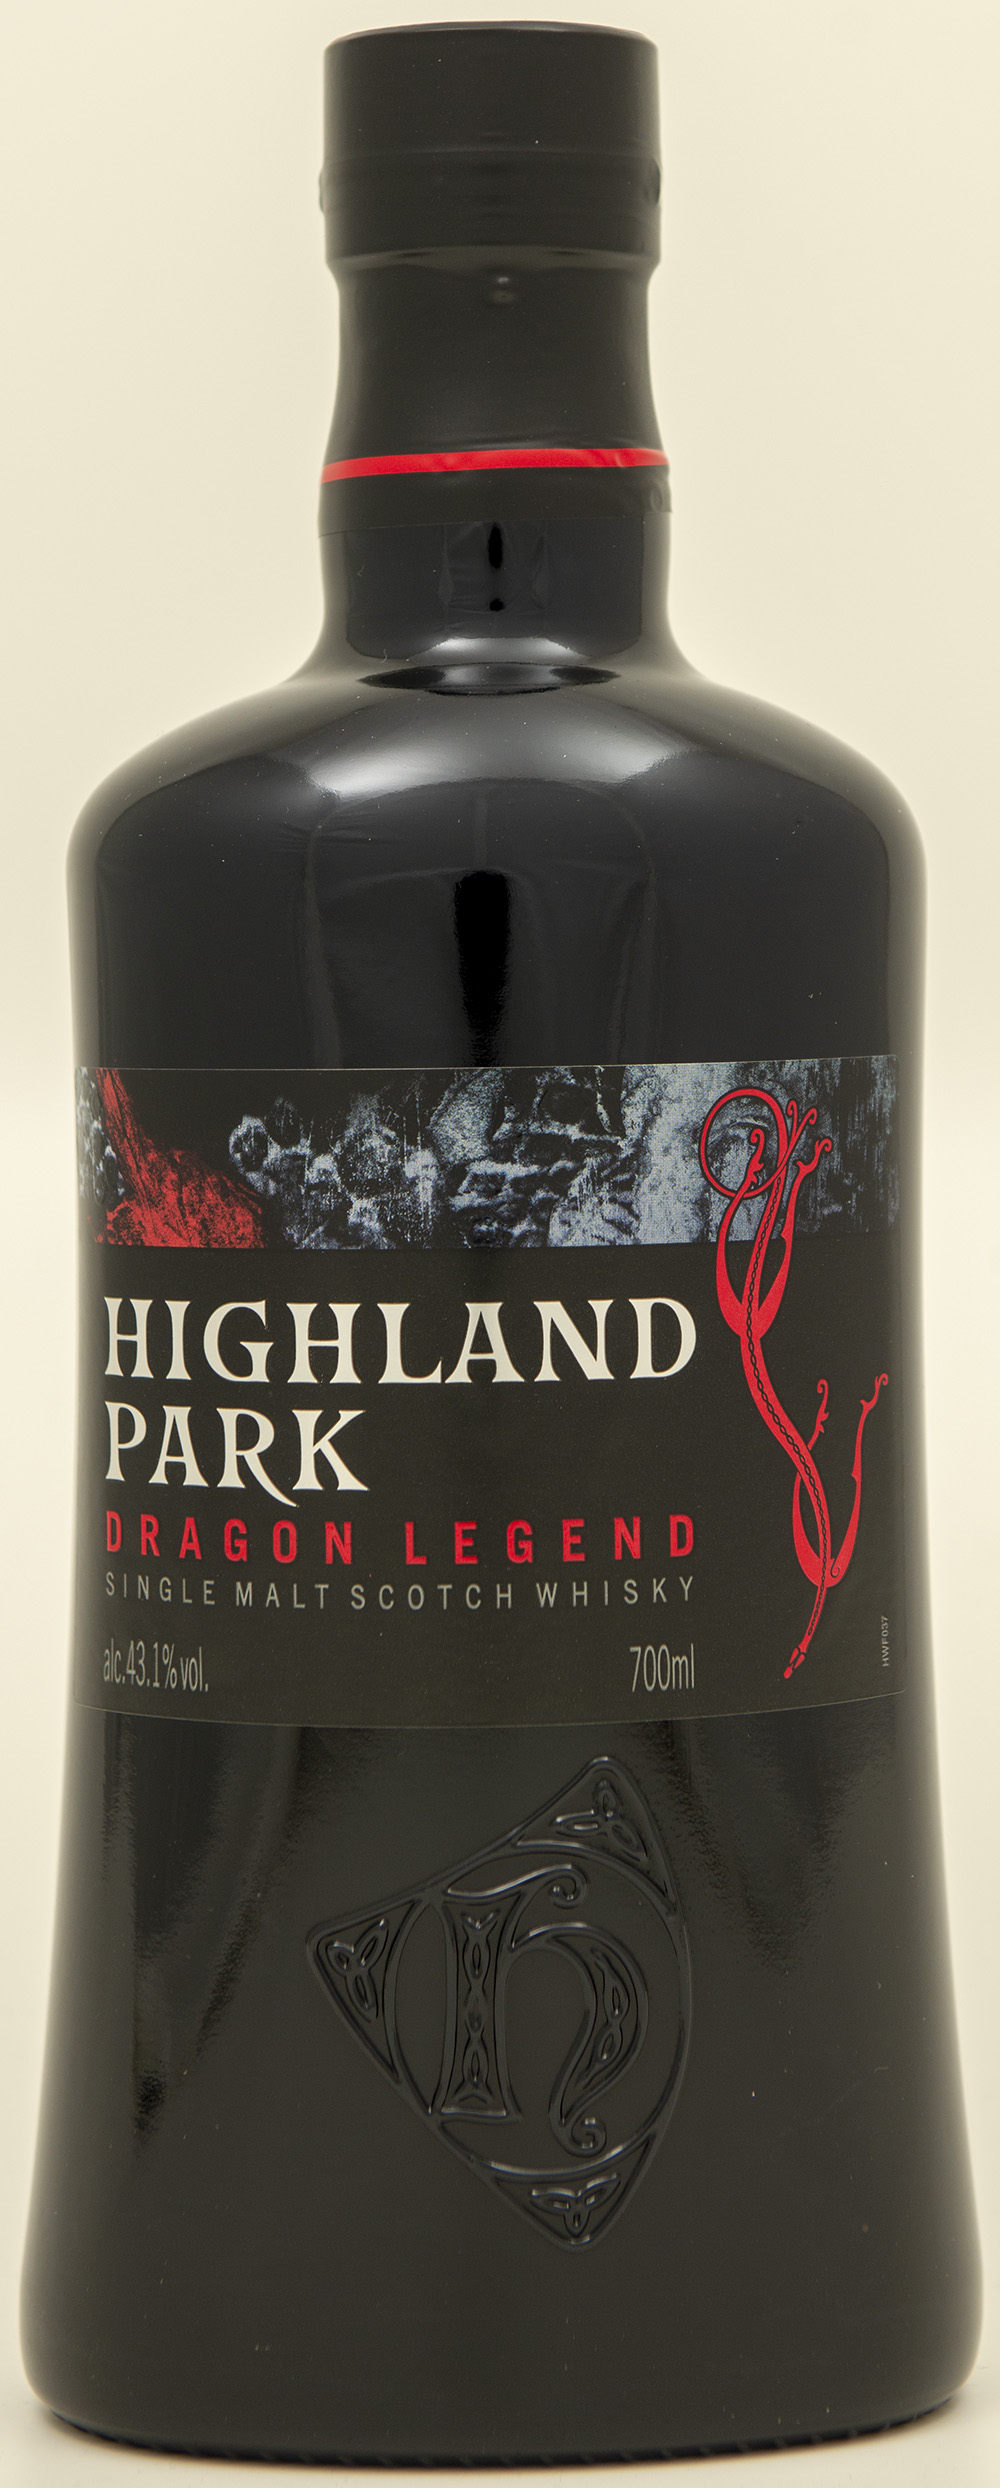 Billede: DSC_4507 - Highland Park Dragon Legend - bottle front.jpg